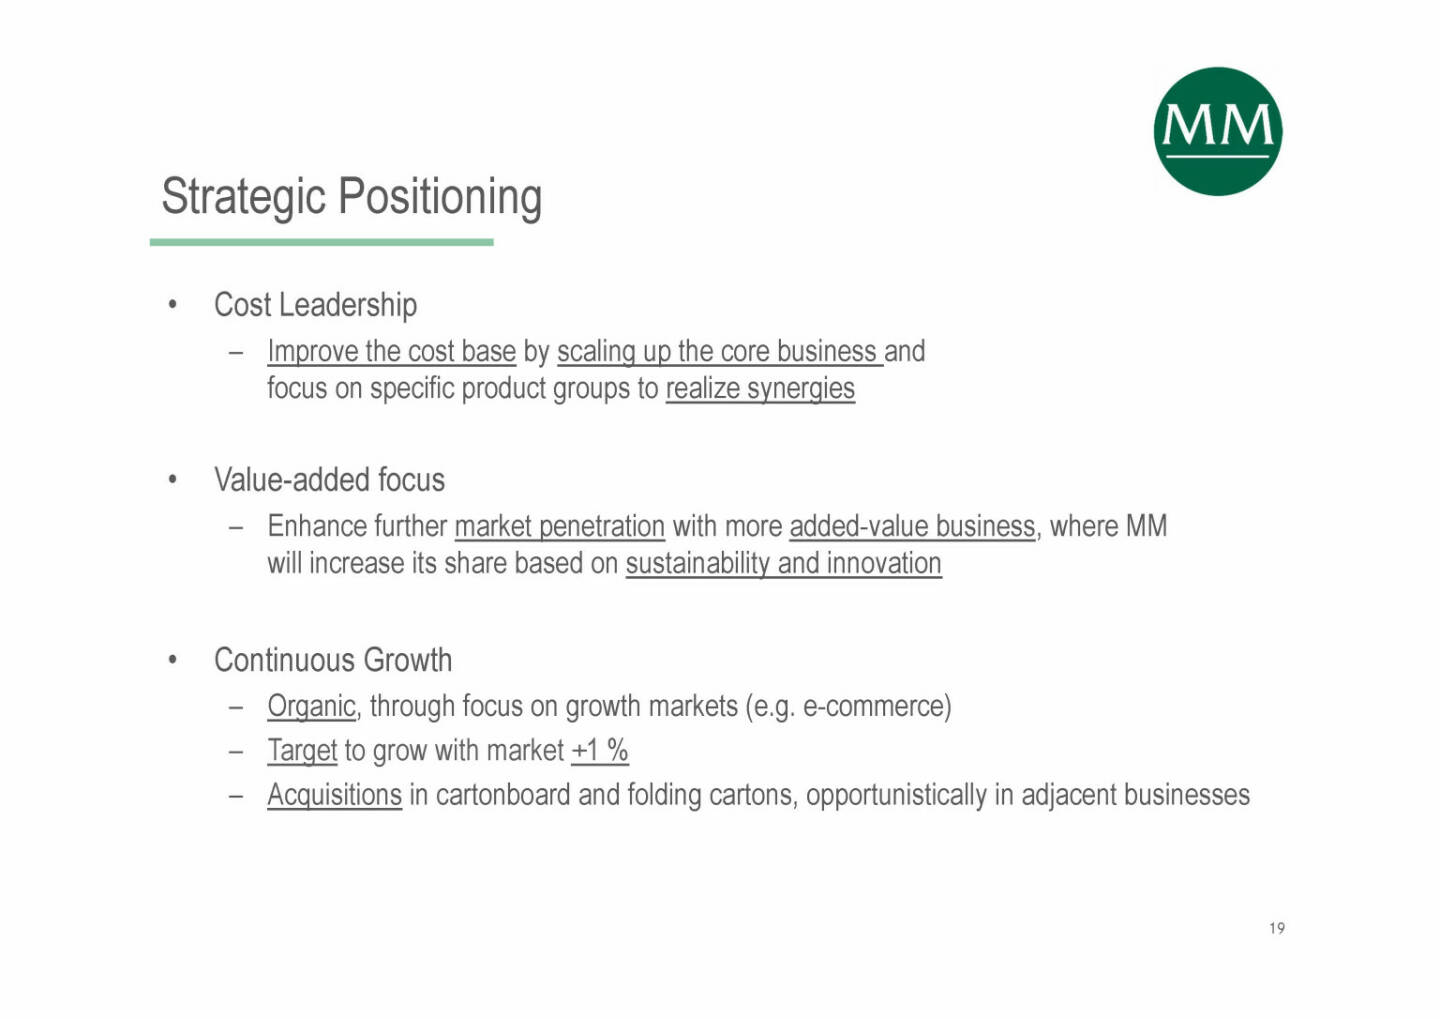 Mayr-Melnhof - Strategic Positioning